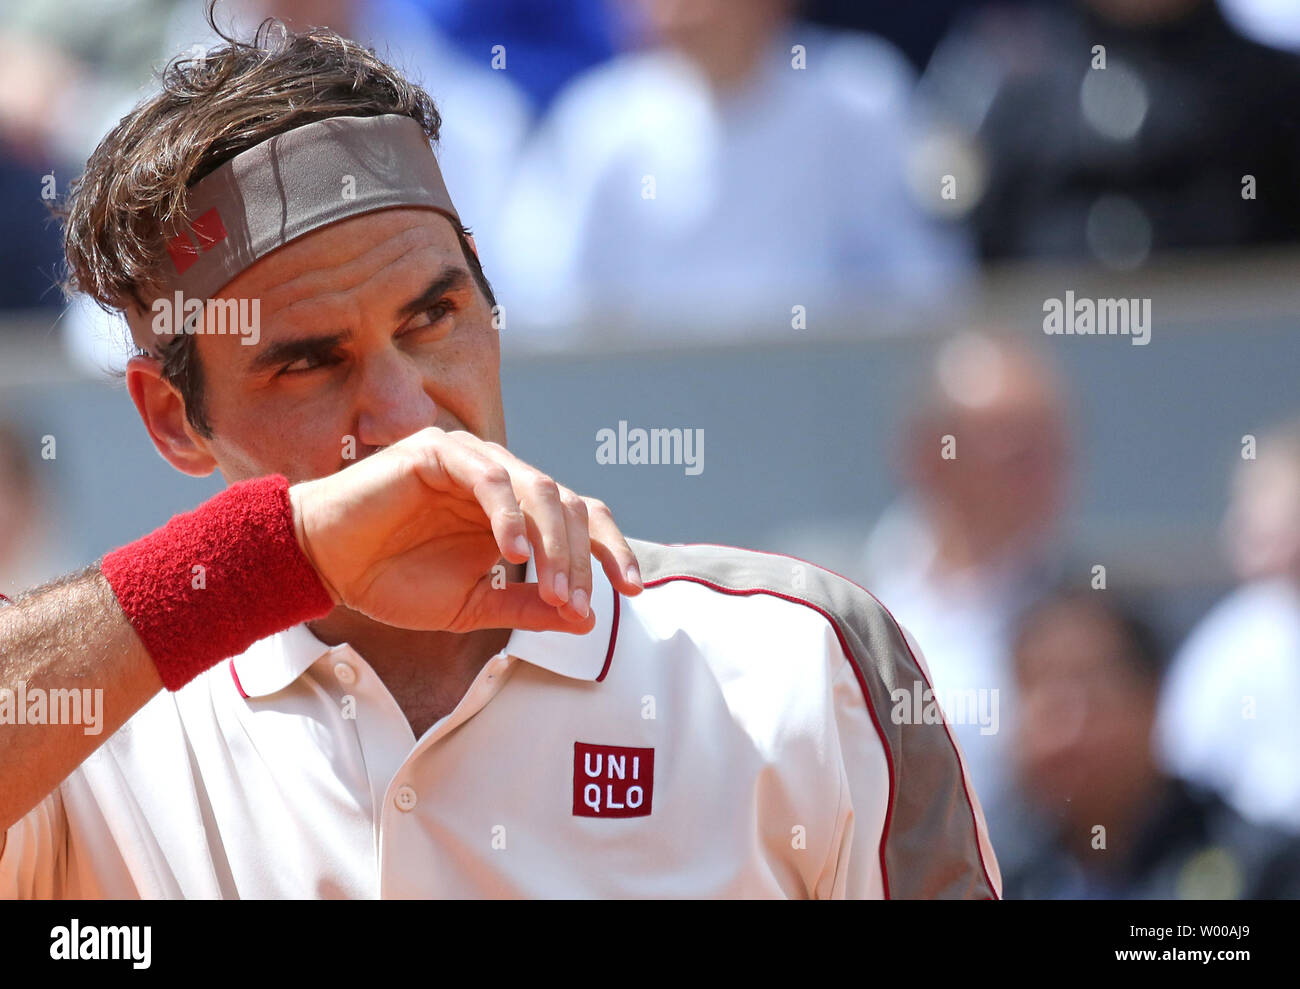 La Suisse de Roger Federer s'arrête lors de son Open de France demi-finales match contre l'Espagne de Rafael Nadal à Roland Garros à Paris le 7 juin 2019. Nadal bat Federer 6-3, 6-4, 6-2) pour passer à la finale. Photo de David Silpa/UPI Banque D'Images